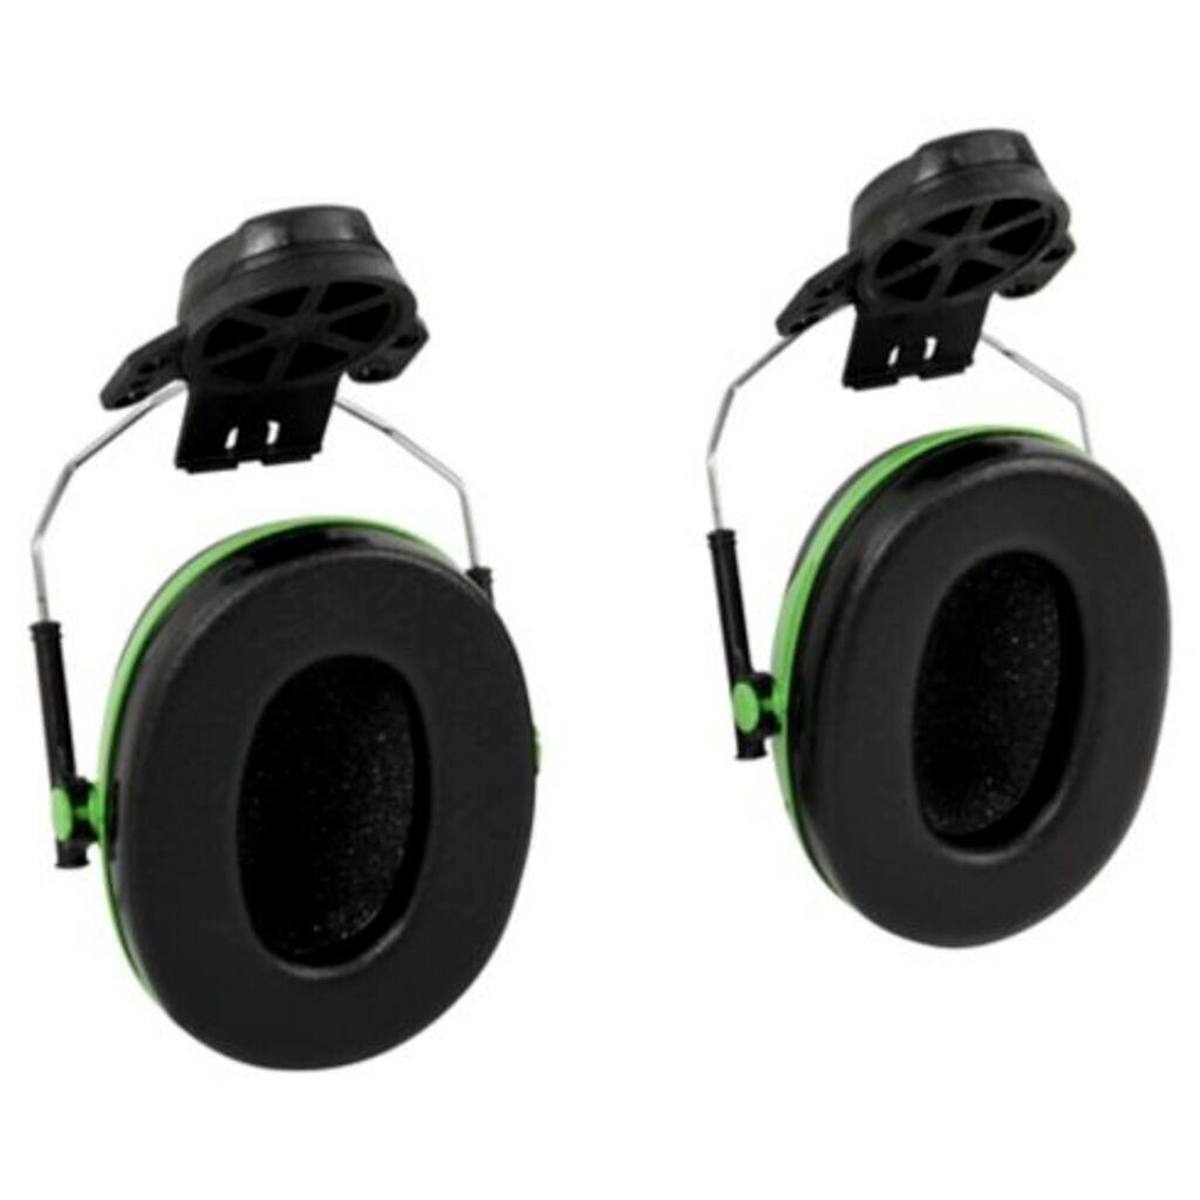 3M Peltor Kapselgehörschutz, X1P3E Helmbefestigung, grün, SNR = 26 dB mit Helmadapter P3E (für alle 3M Helme, ausgenommen G2000)